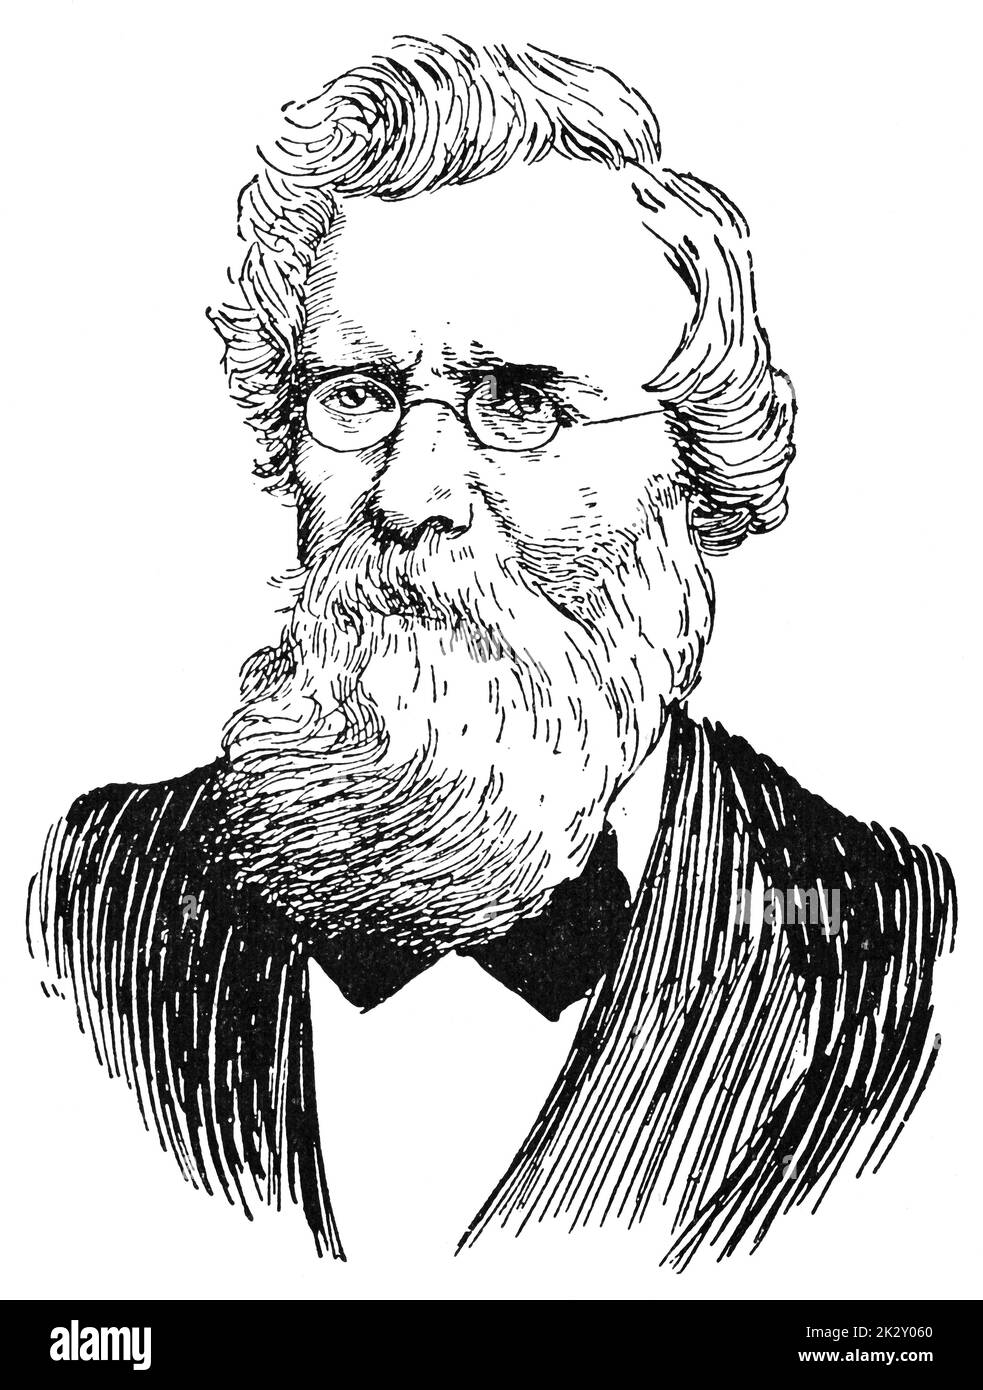 Portrait d'août Wilhelm von Hofmann - un chimiste allemand qui a apporté une contribution considérable à la chimie organique. Illustration du 19e siècle. Allemagne. Arrière-plan blanc. Banque D'Images